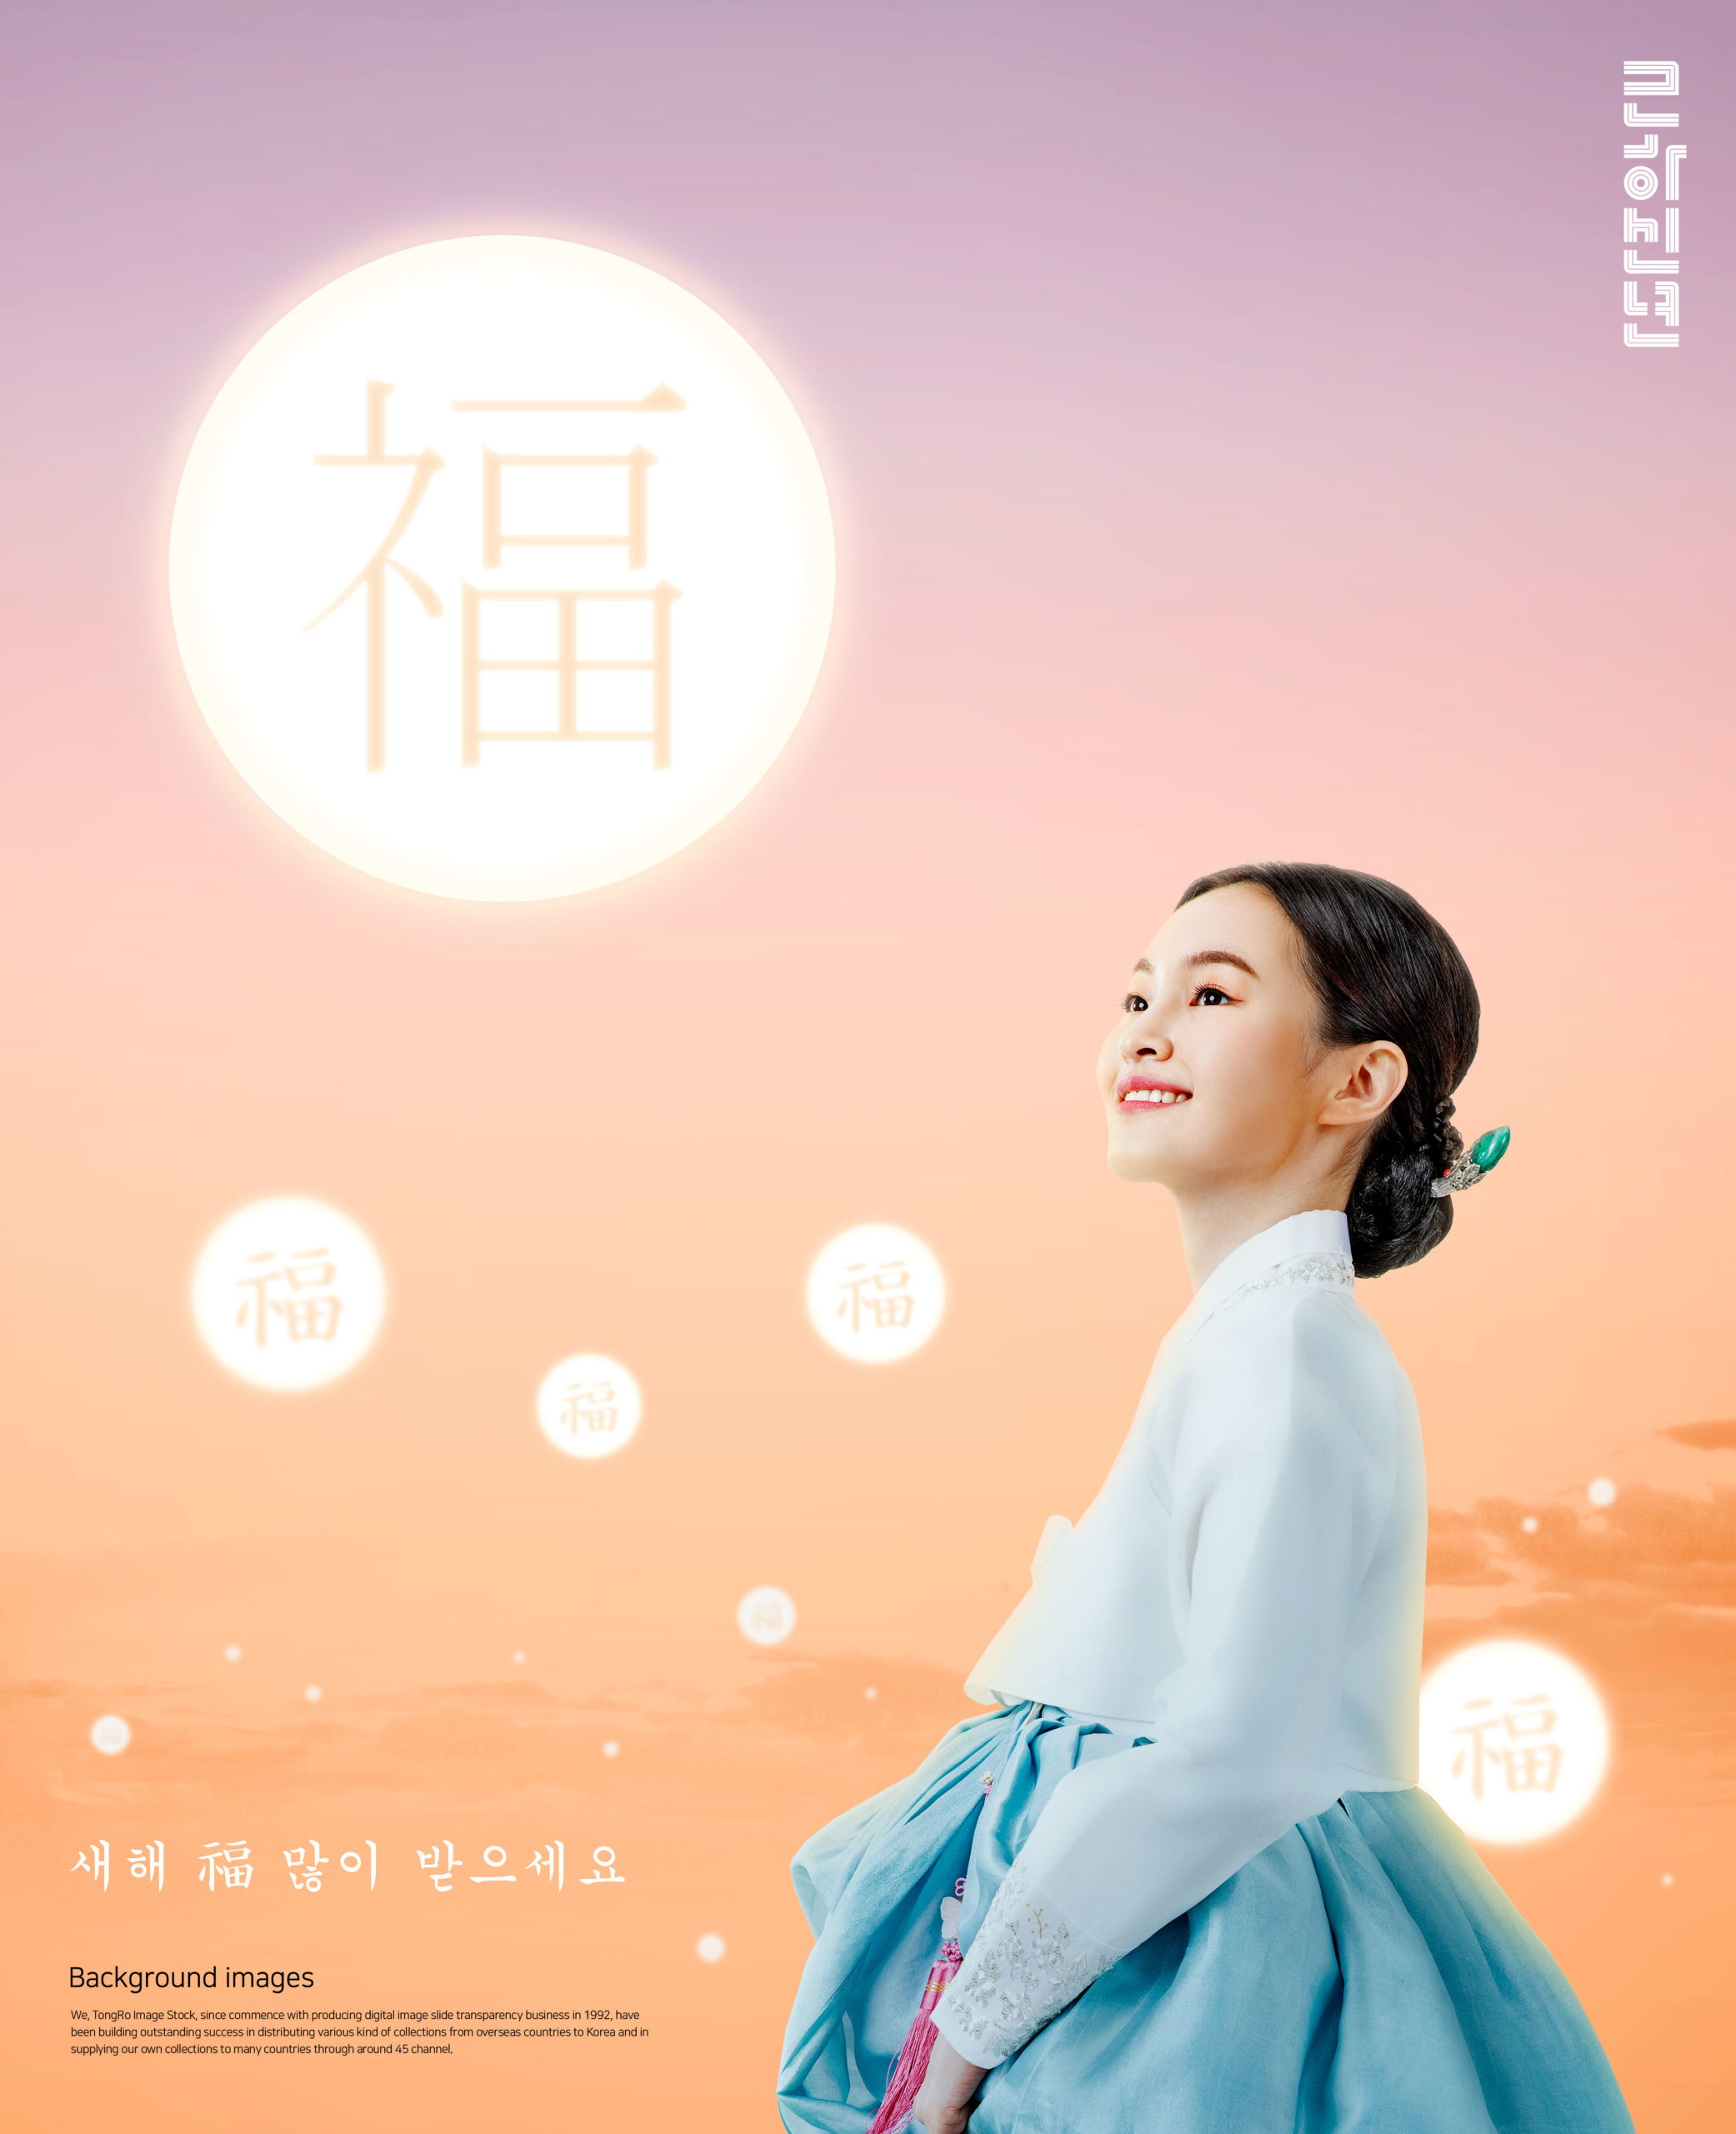 韩国元素风格”福到/月圆”新年主题海报模板套装[PSD]插图(4)